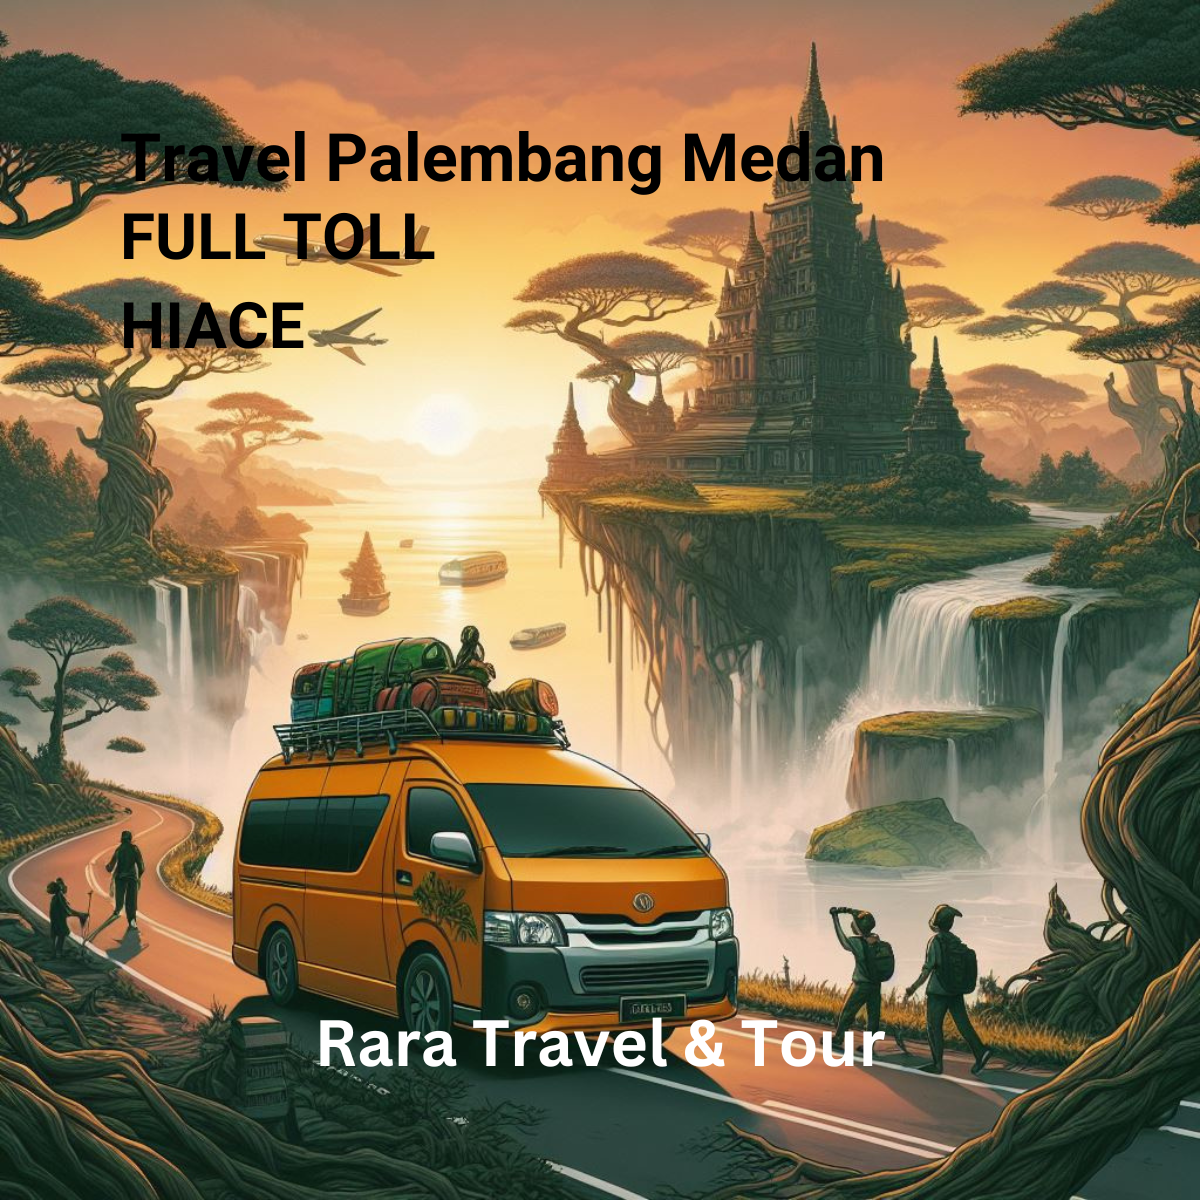 Travel Palembang Medan Hiace Murah Full Toll Layanan 24 Jam